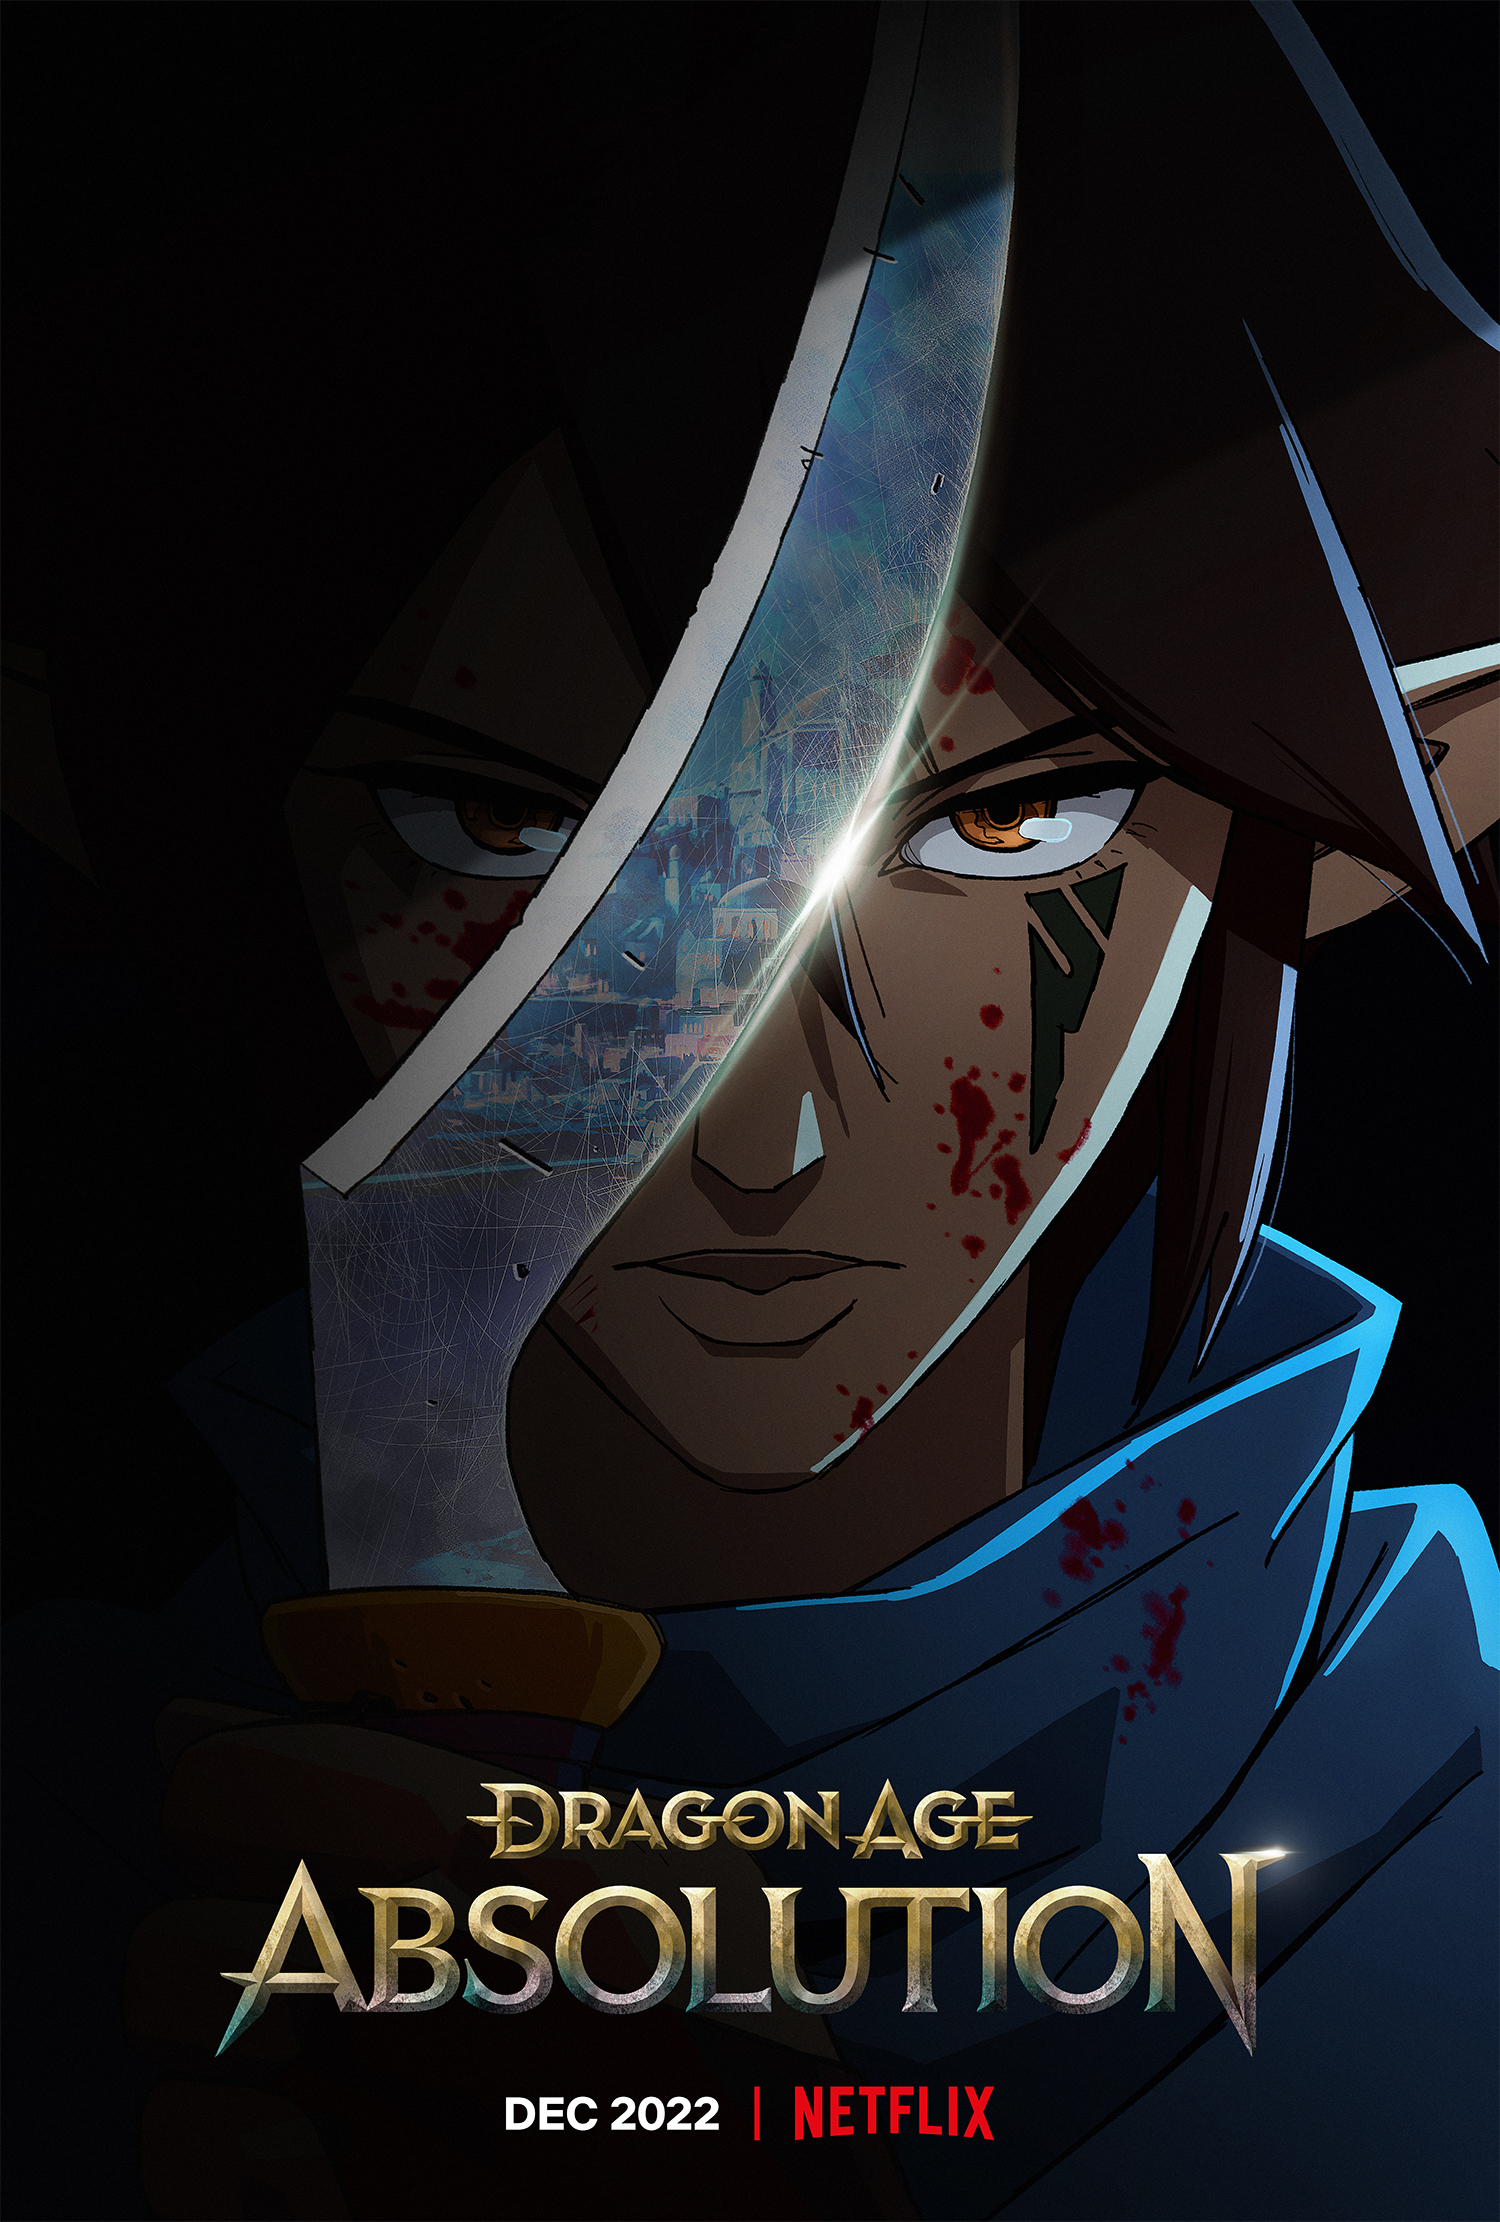 la key art di dragon age absolution mostra un ragazzo coperto a metà dalla lama di una spada - nerdface